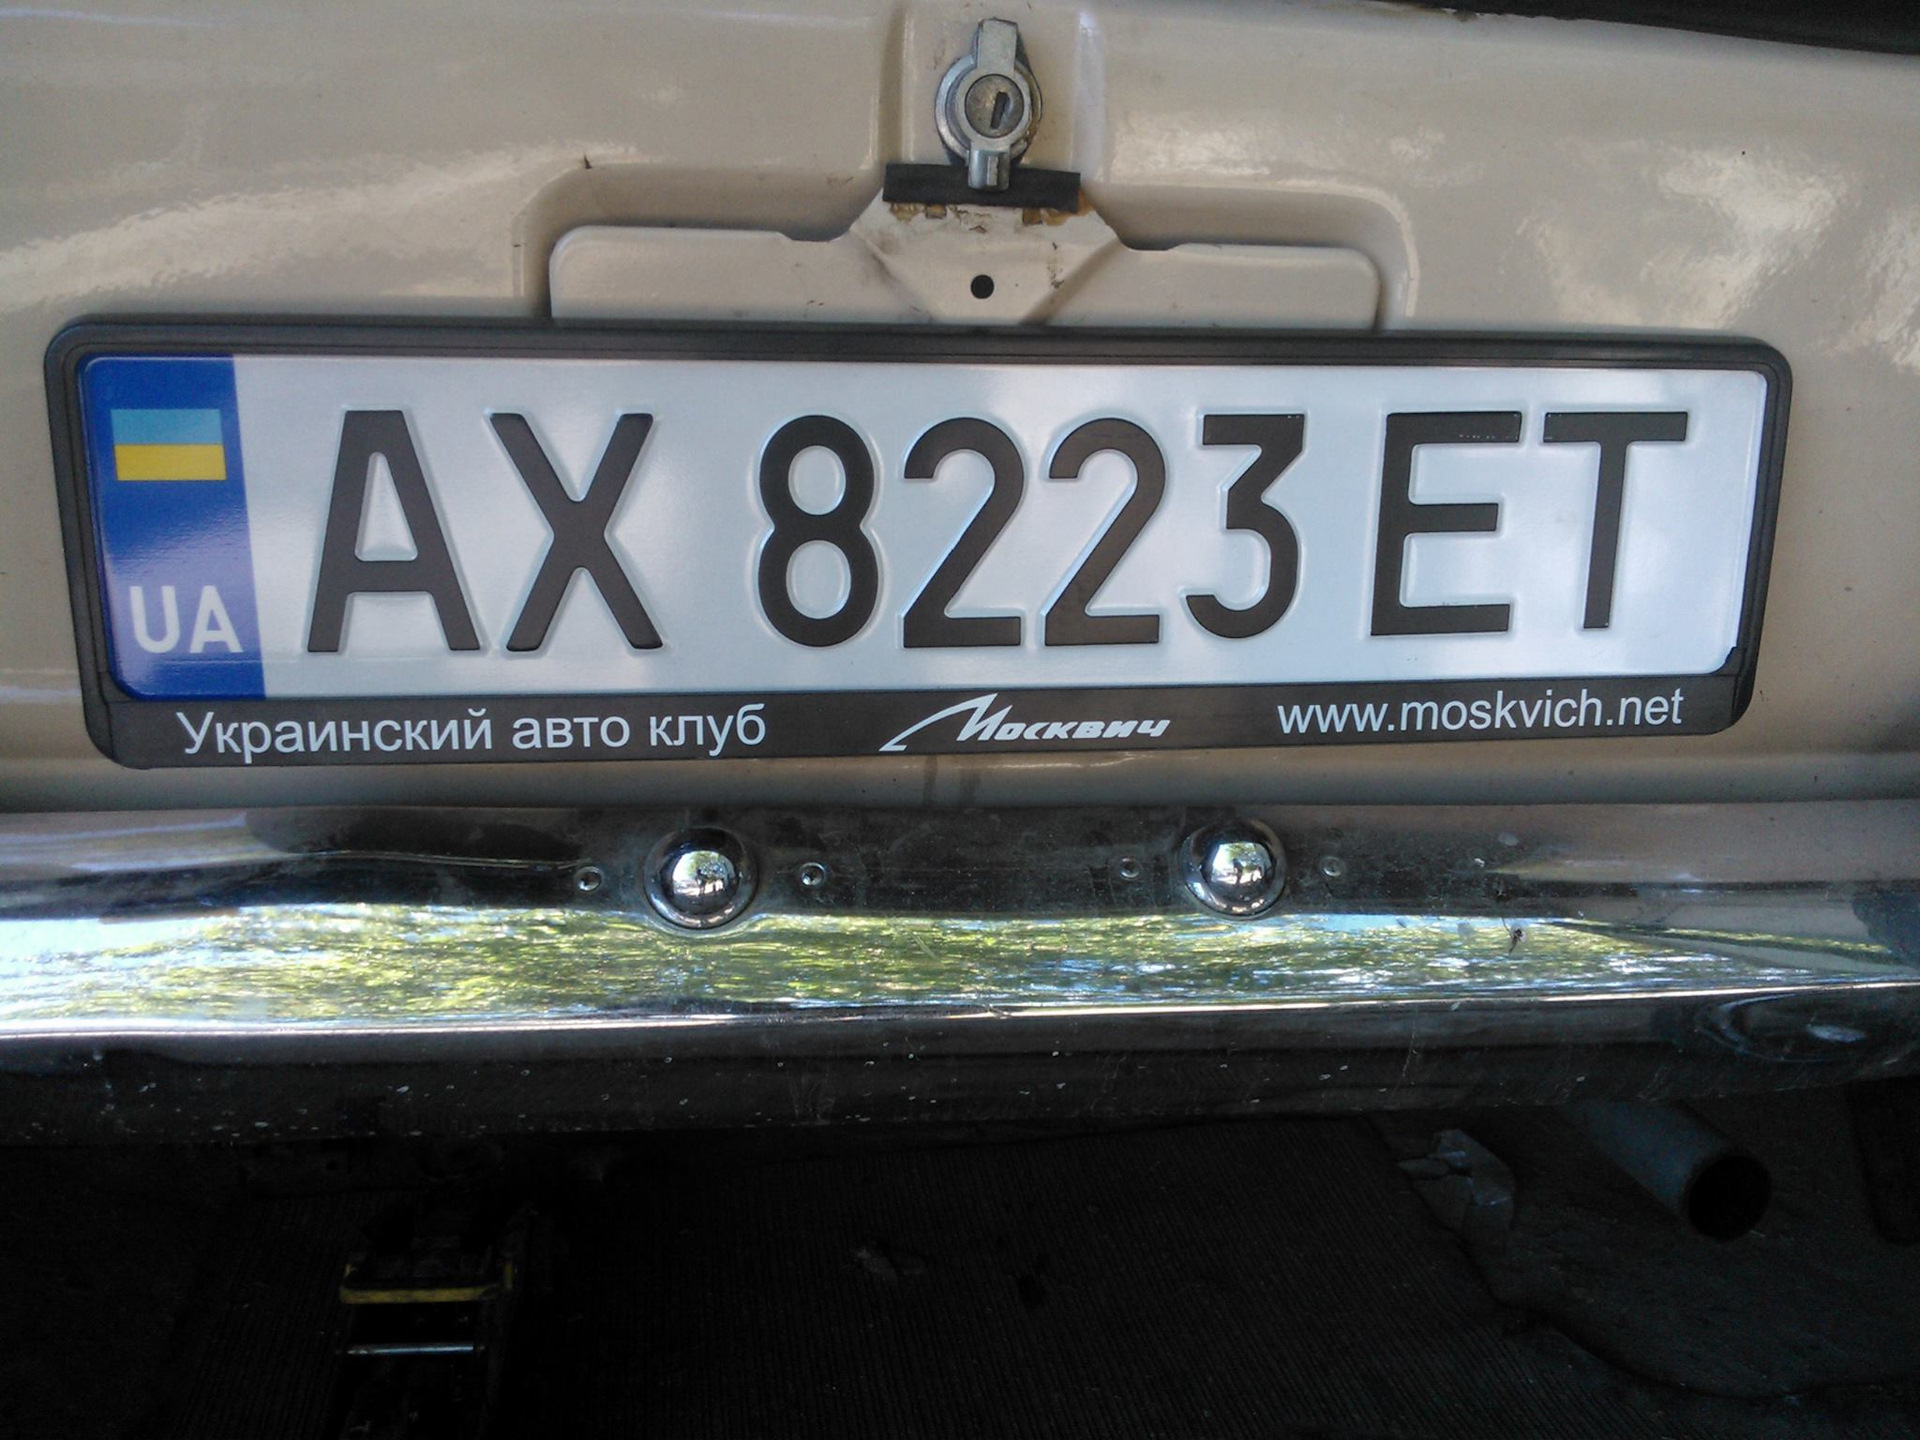 Автомобильные коды украины. Номера Украины автомобильные. Украинские автомобильные номера. Укр номера авто. Старые украинские номера автомобилей.